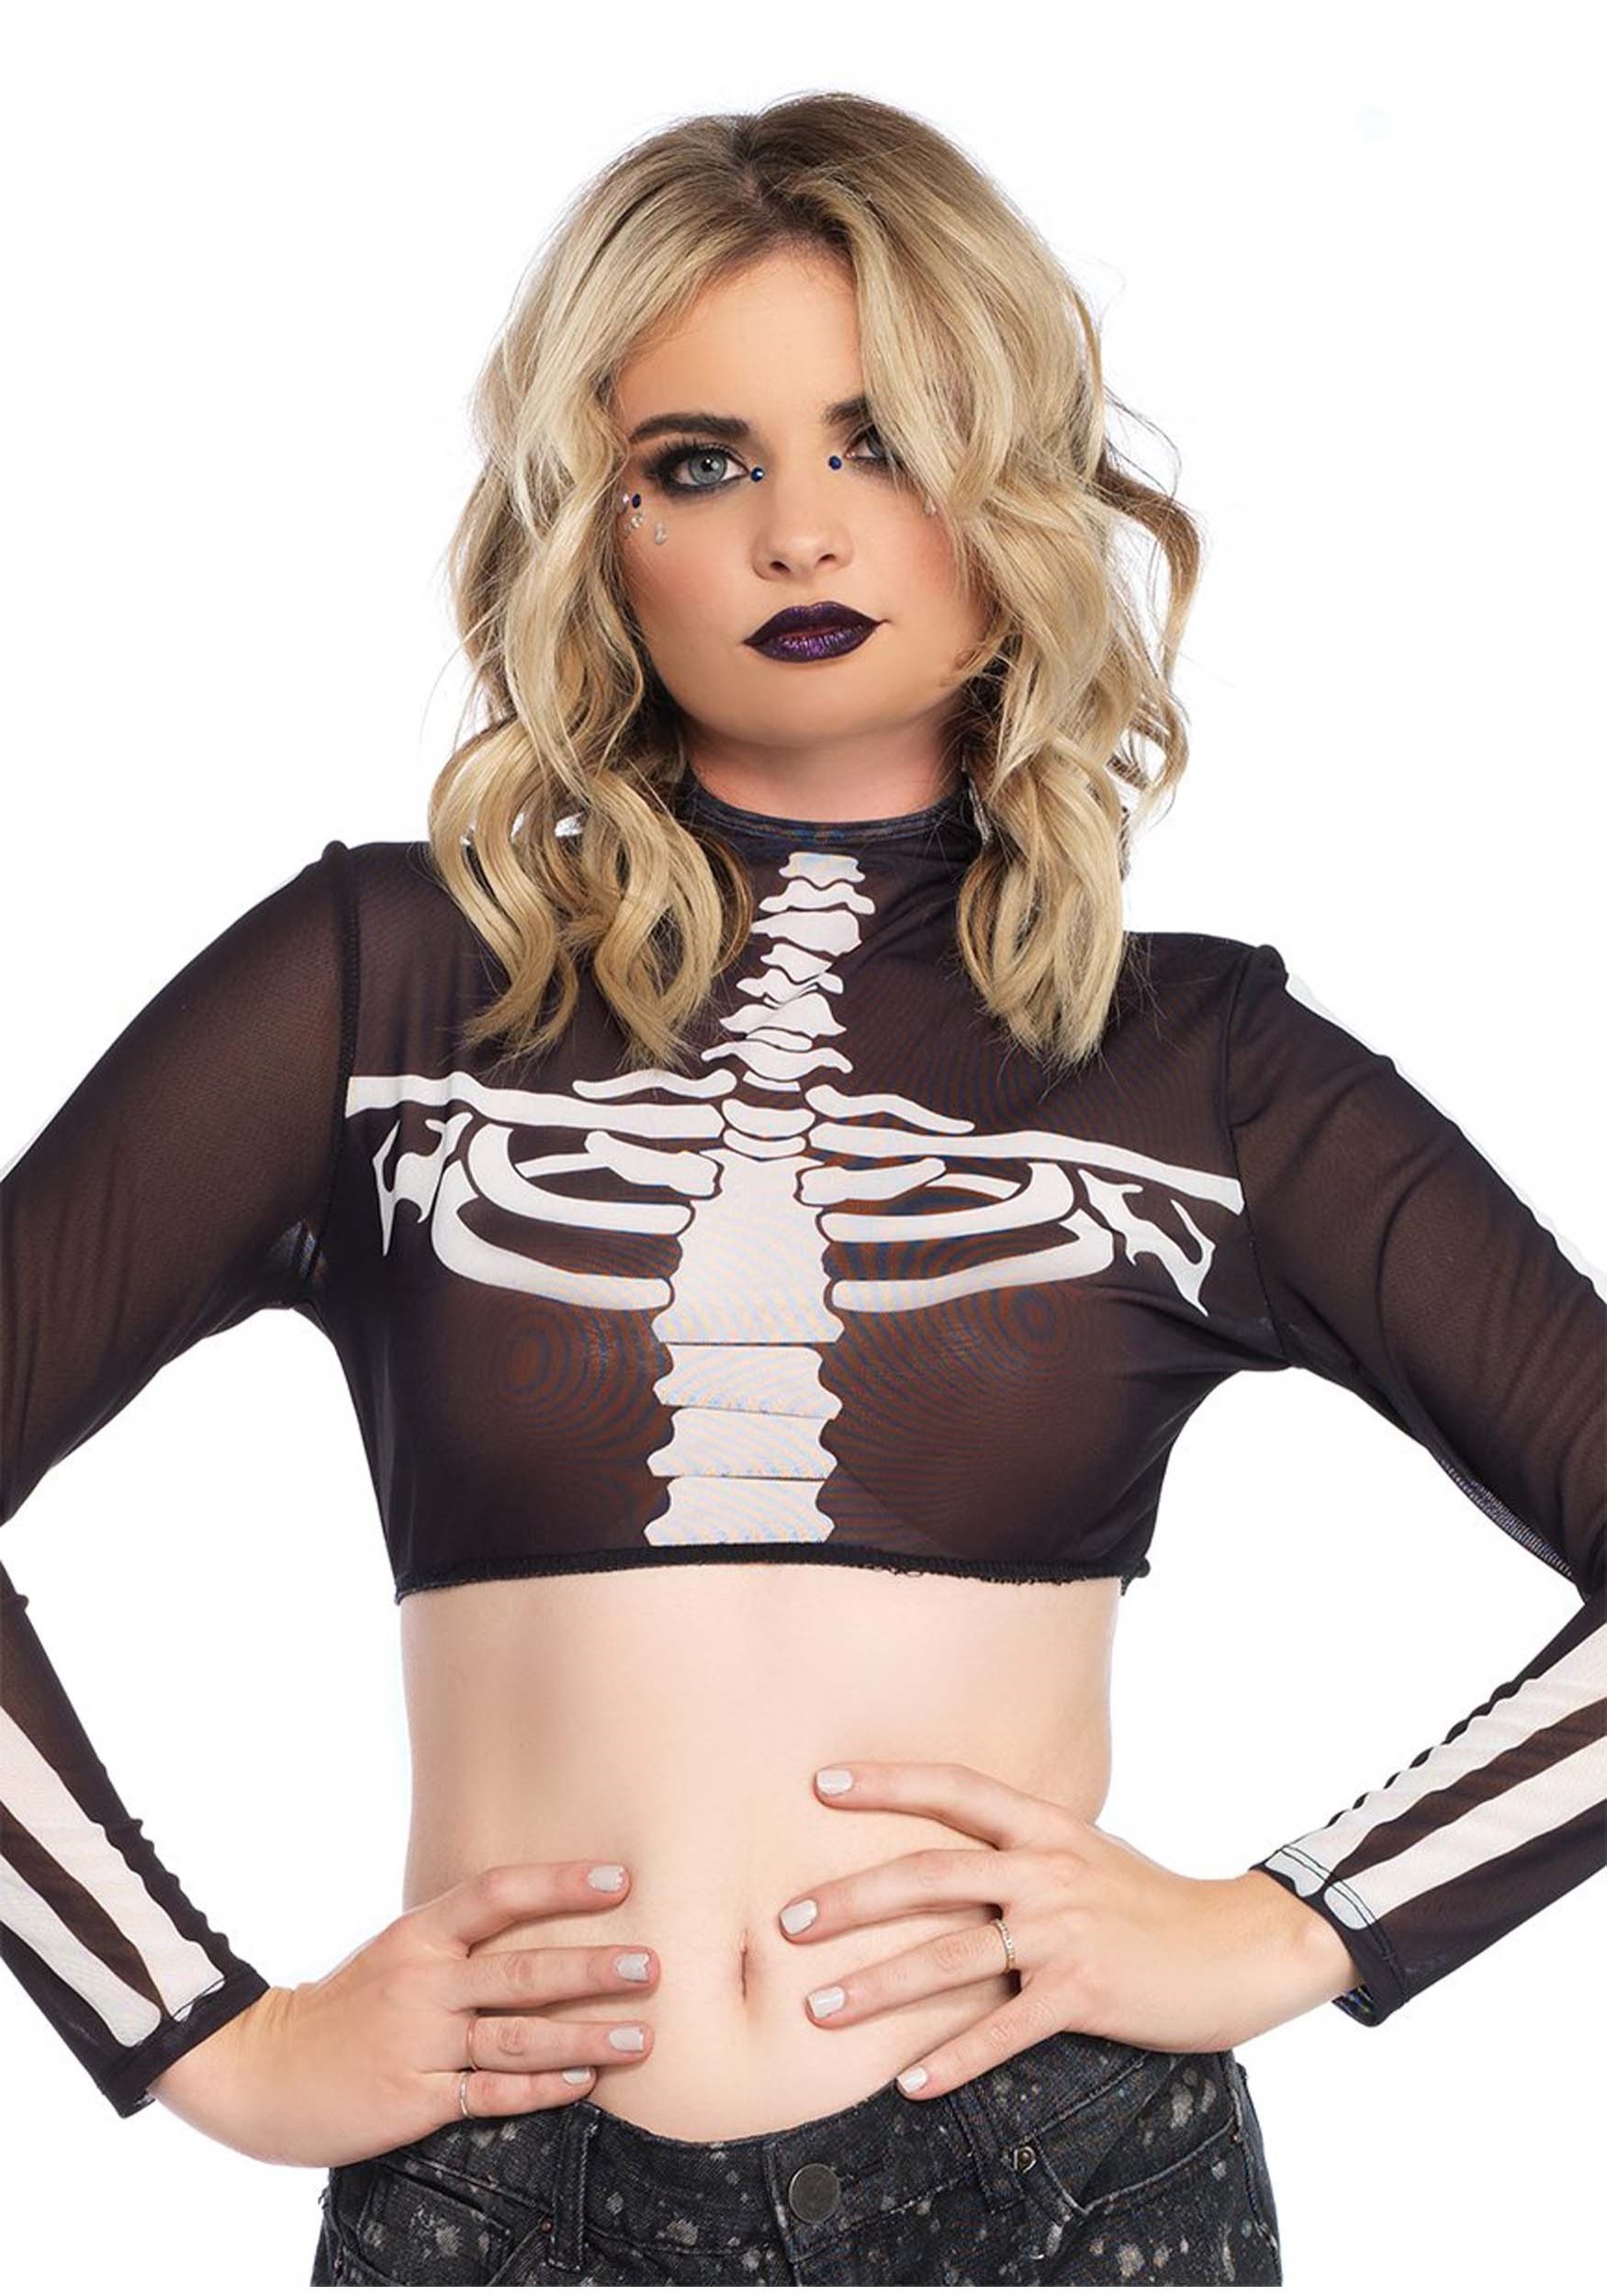 Women’s Black Skeleton High Neck Crop Top Costume